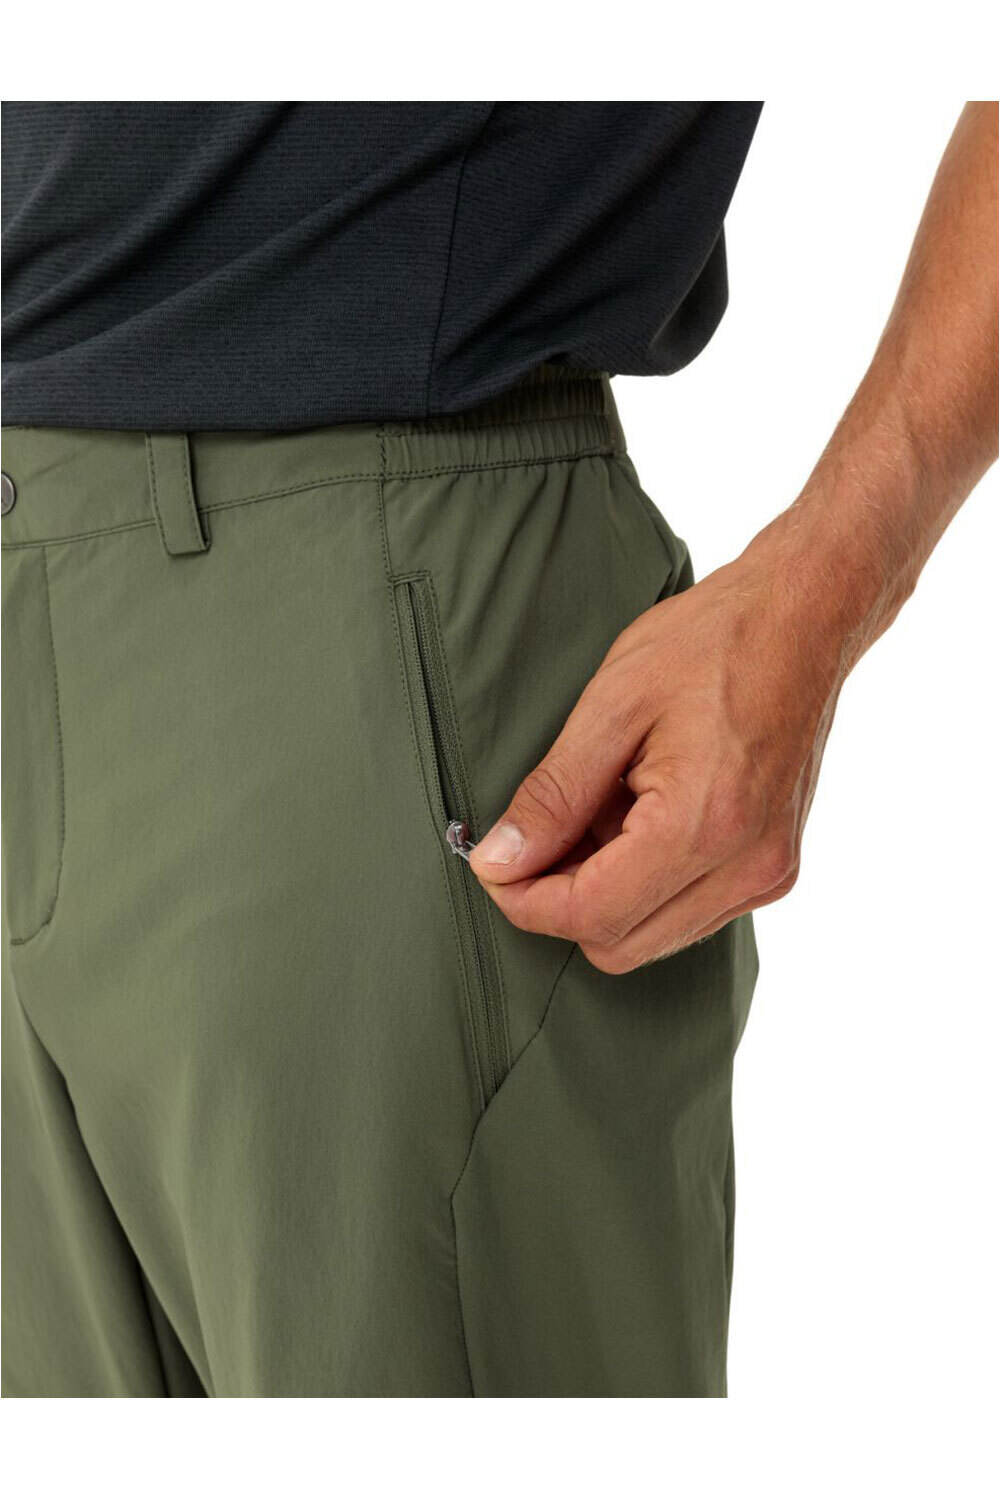 Vaude pantalón montaña hombre Men's Farley Stretch Pants III 03